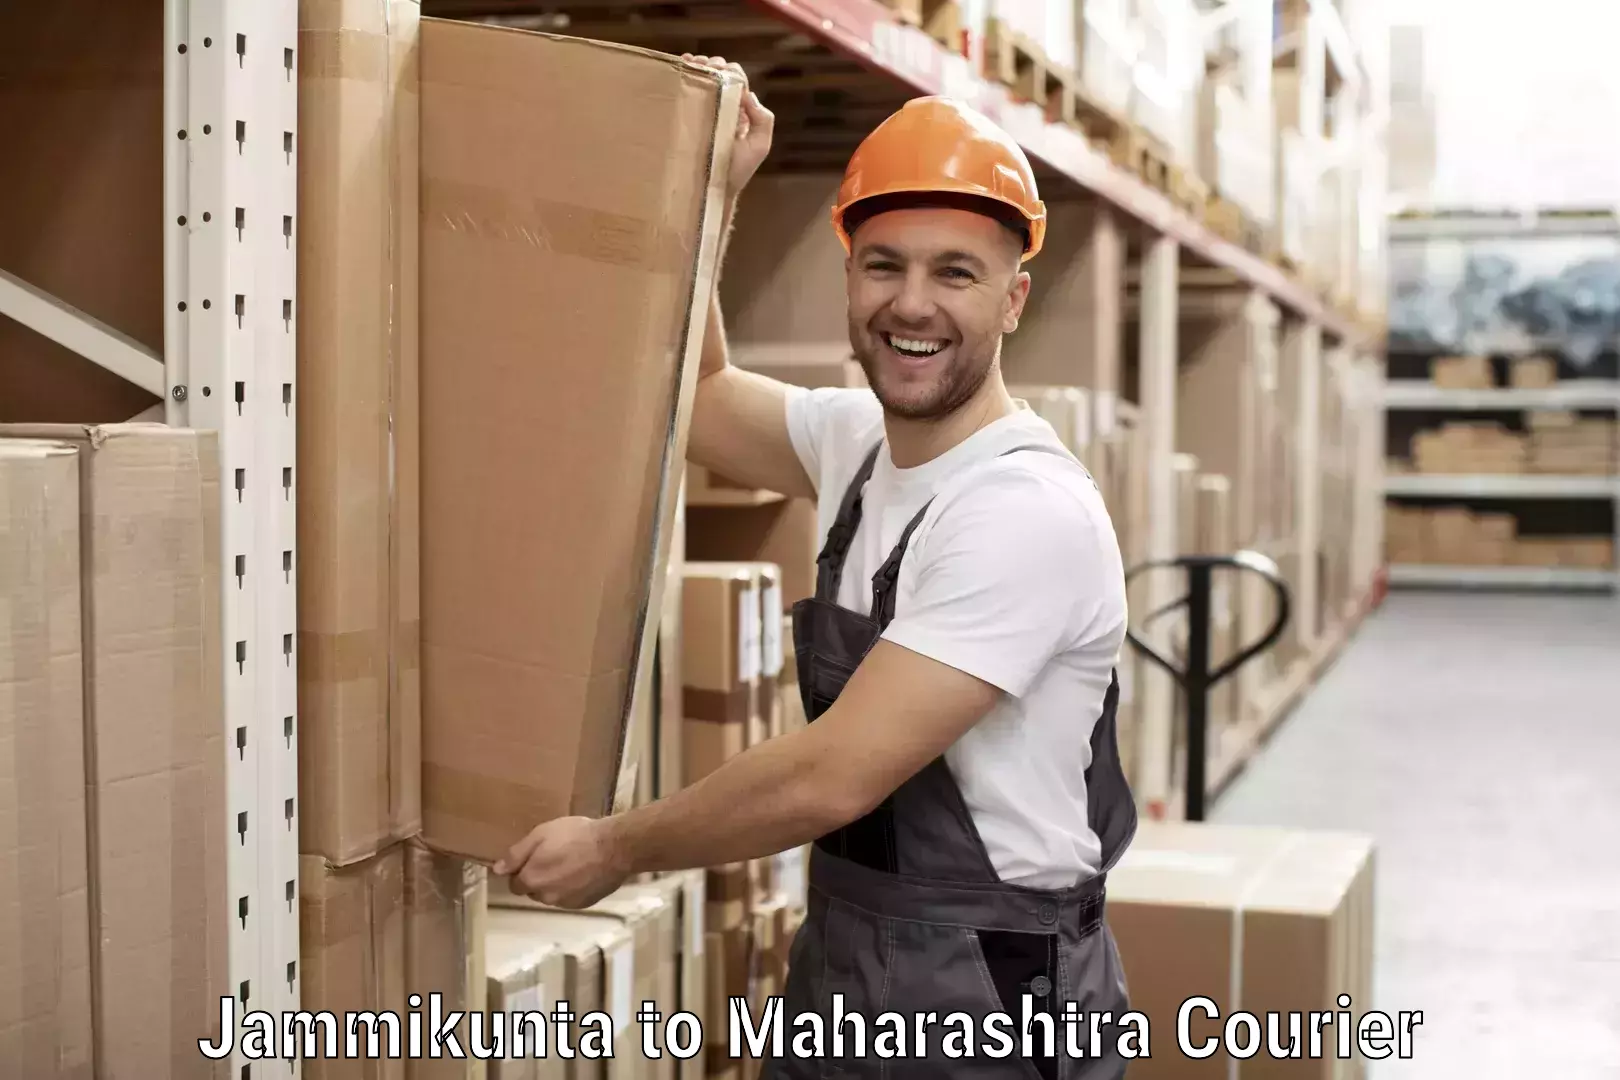 Customer-friendly courier services Jammikunta to Maharashtra